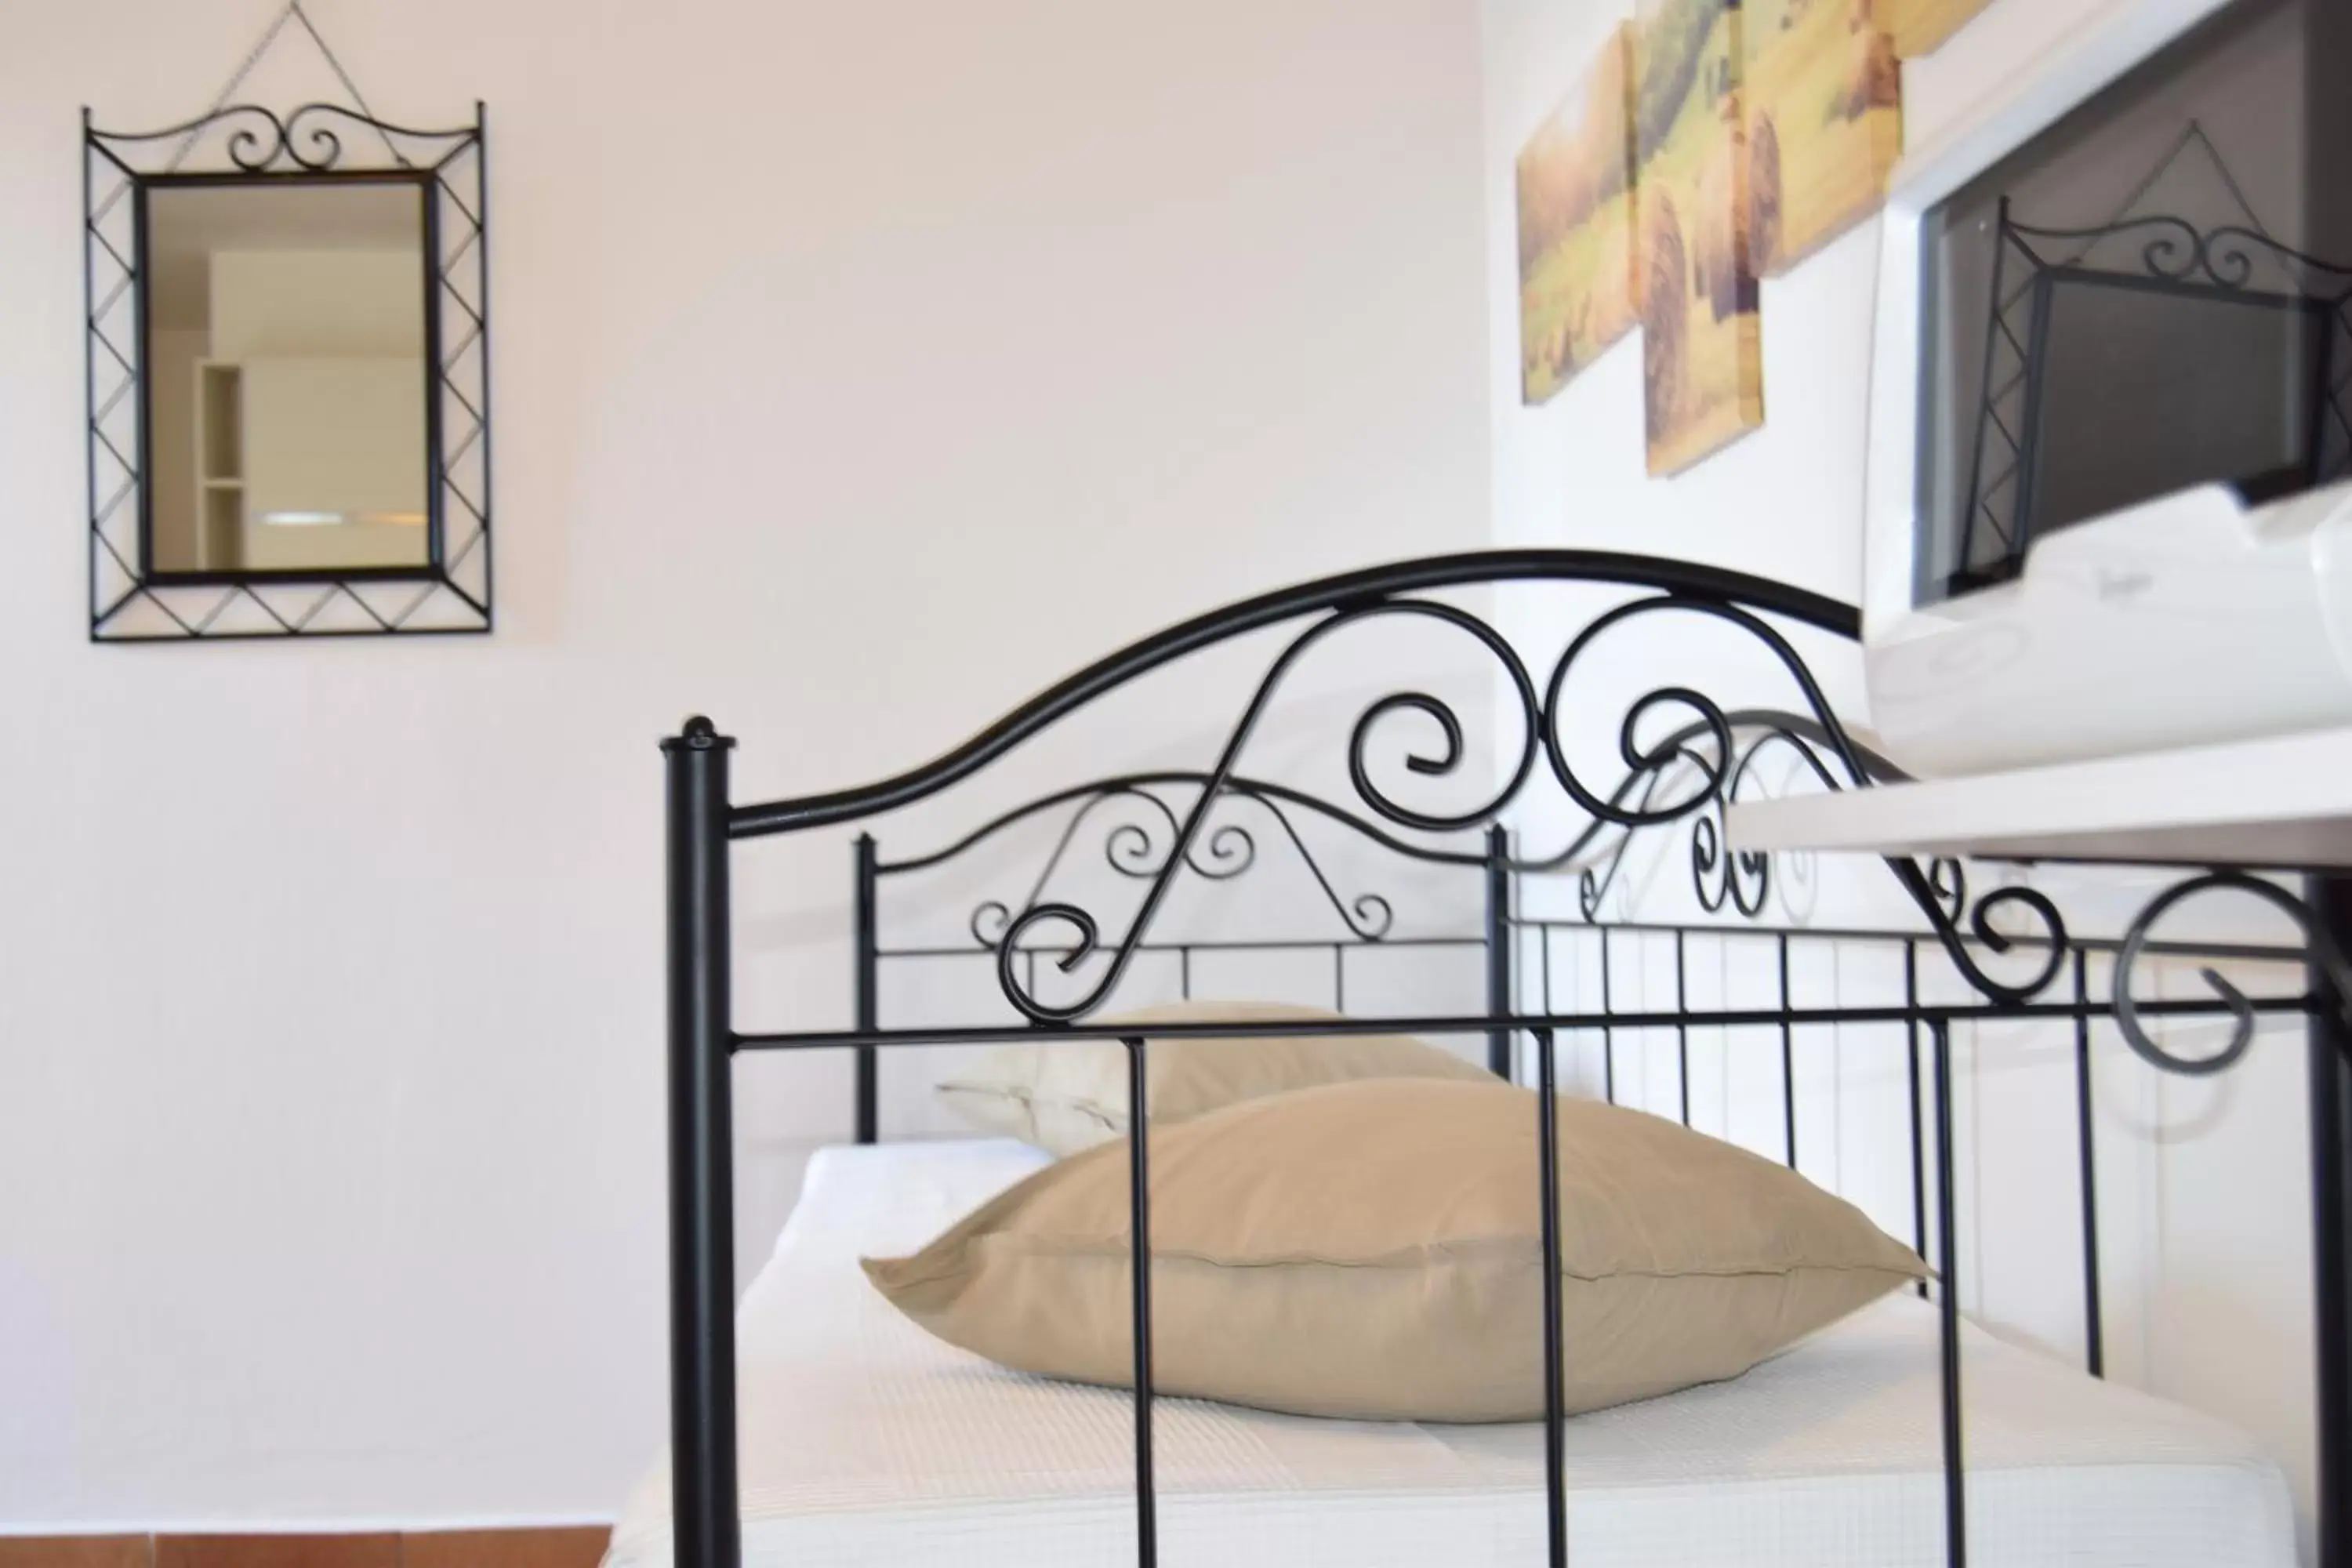 Bed in Residence Segattini